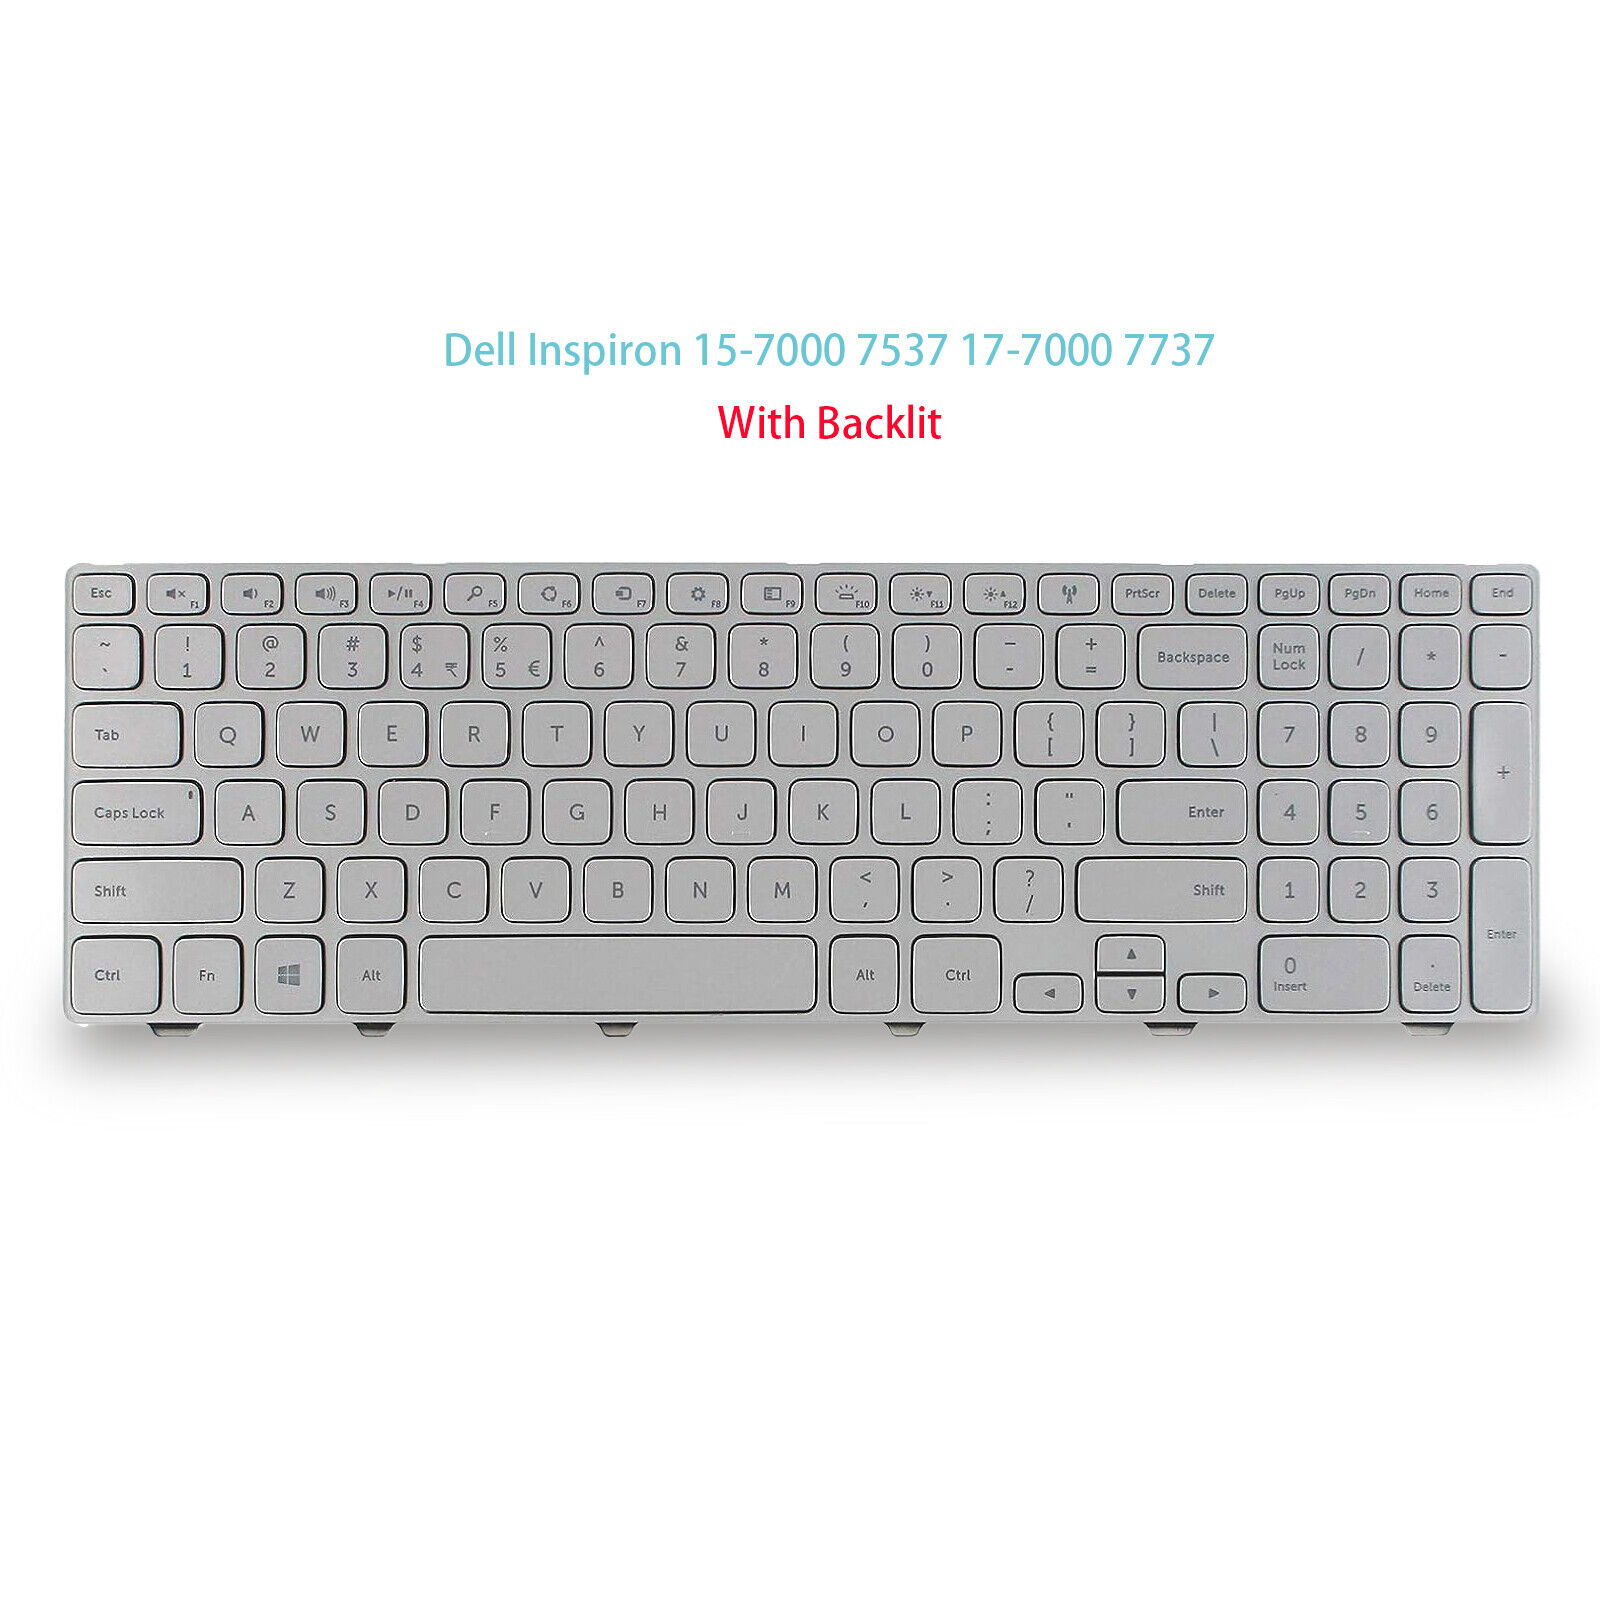 Original US Keyboard with Backlit for Dell Inspiron 7537 0KK7X9 Sliver